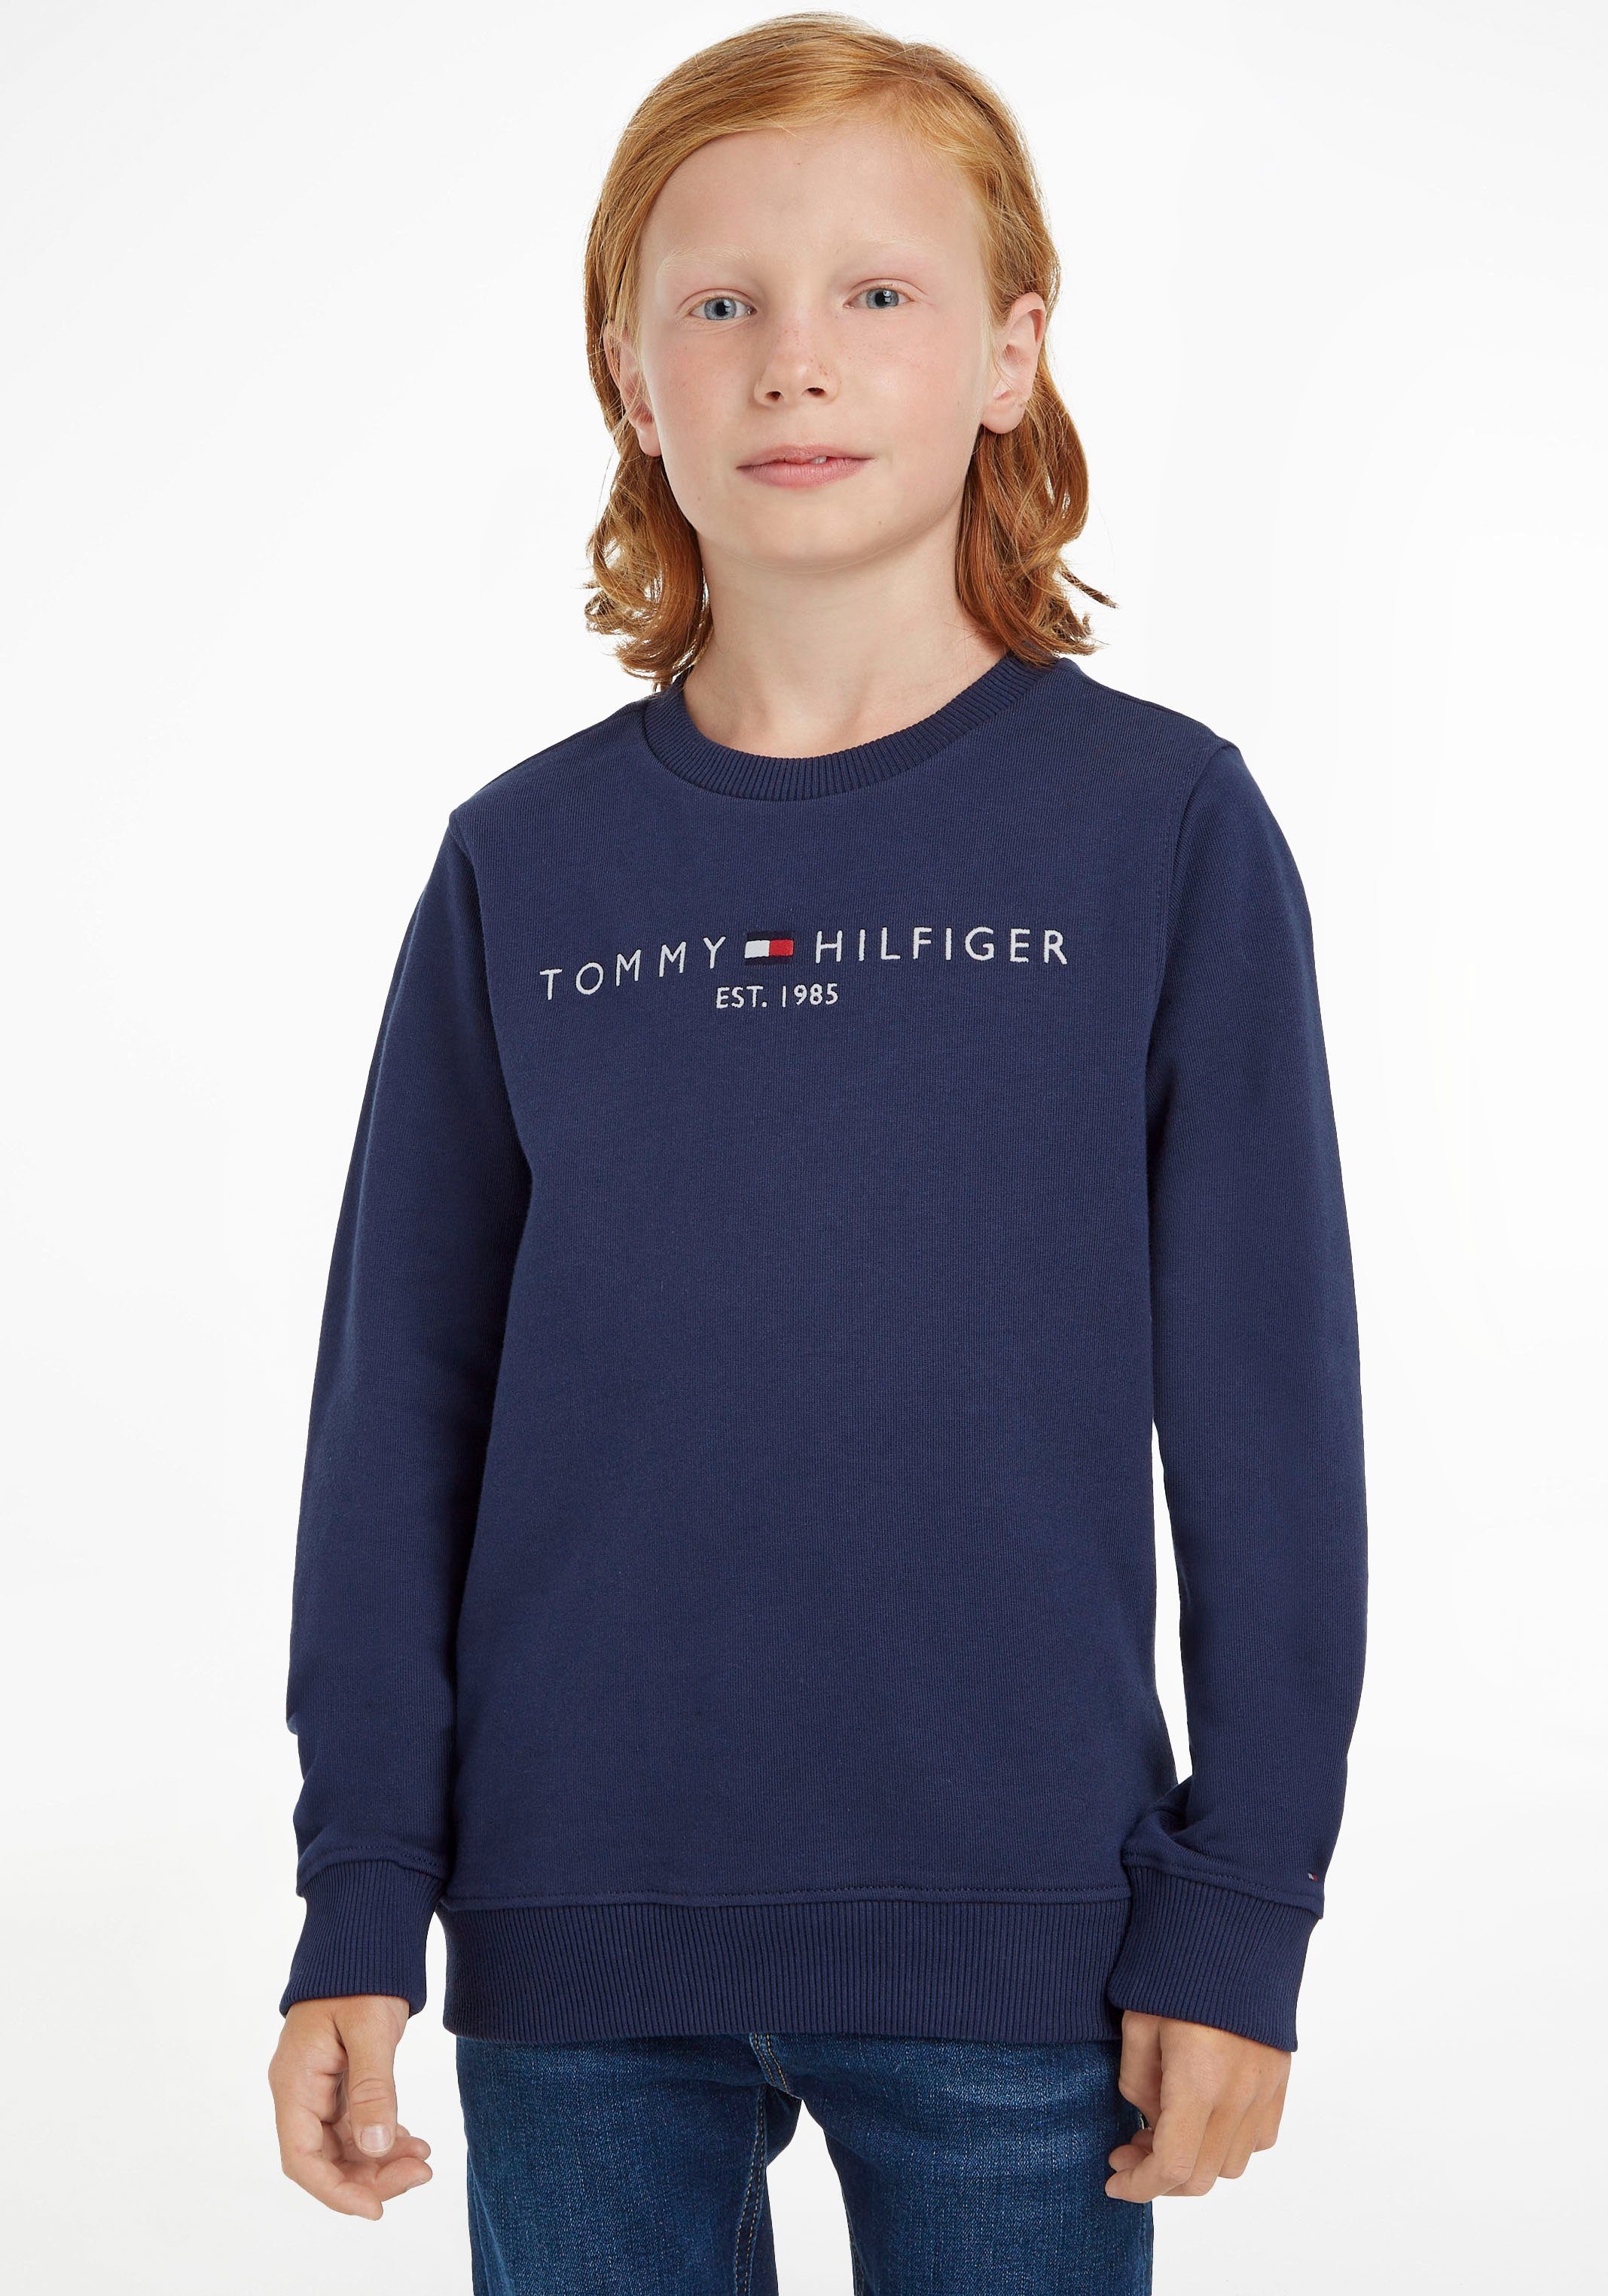 MiniMe,für Jungen Hilfiger Mädchen ESSENTIAL Junior Sweatshirt Tommy Kids und SWEATSHIRT Kinder